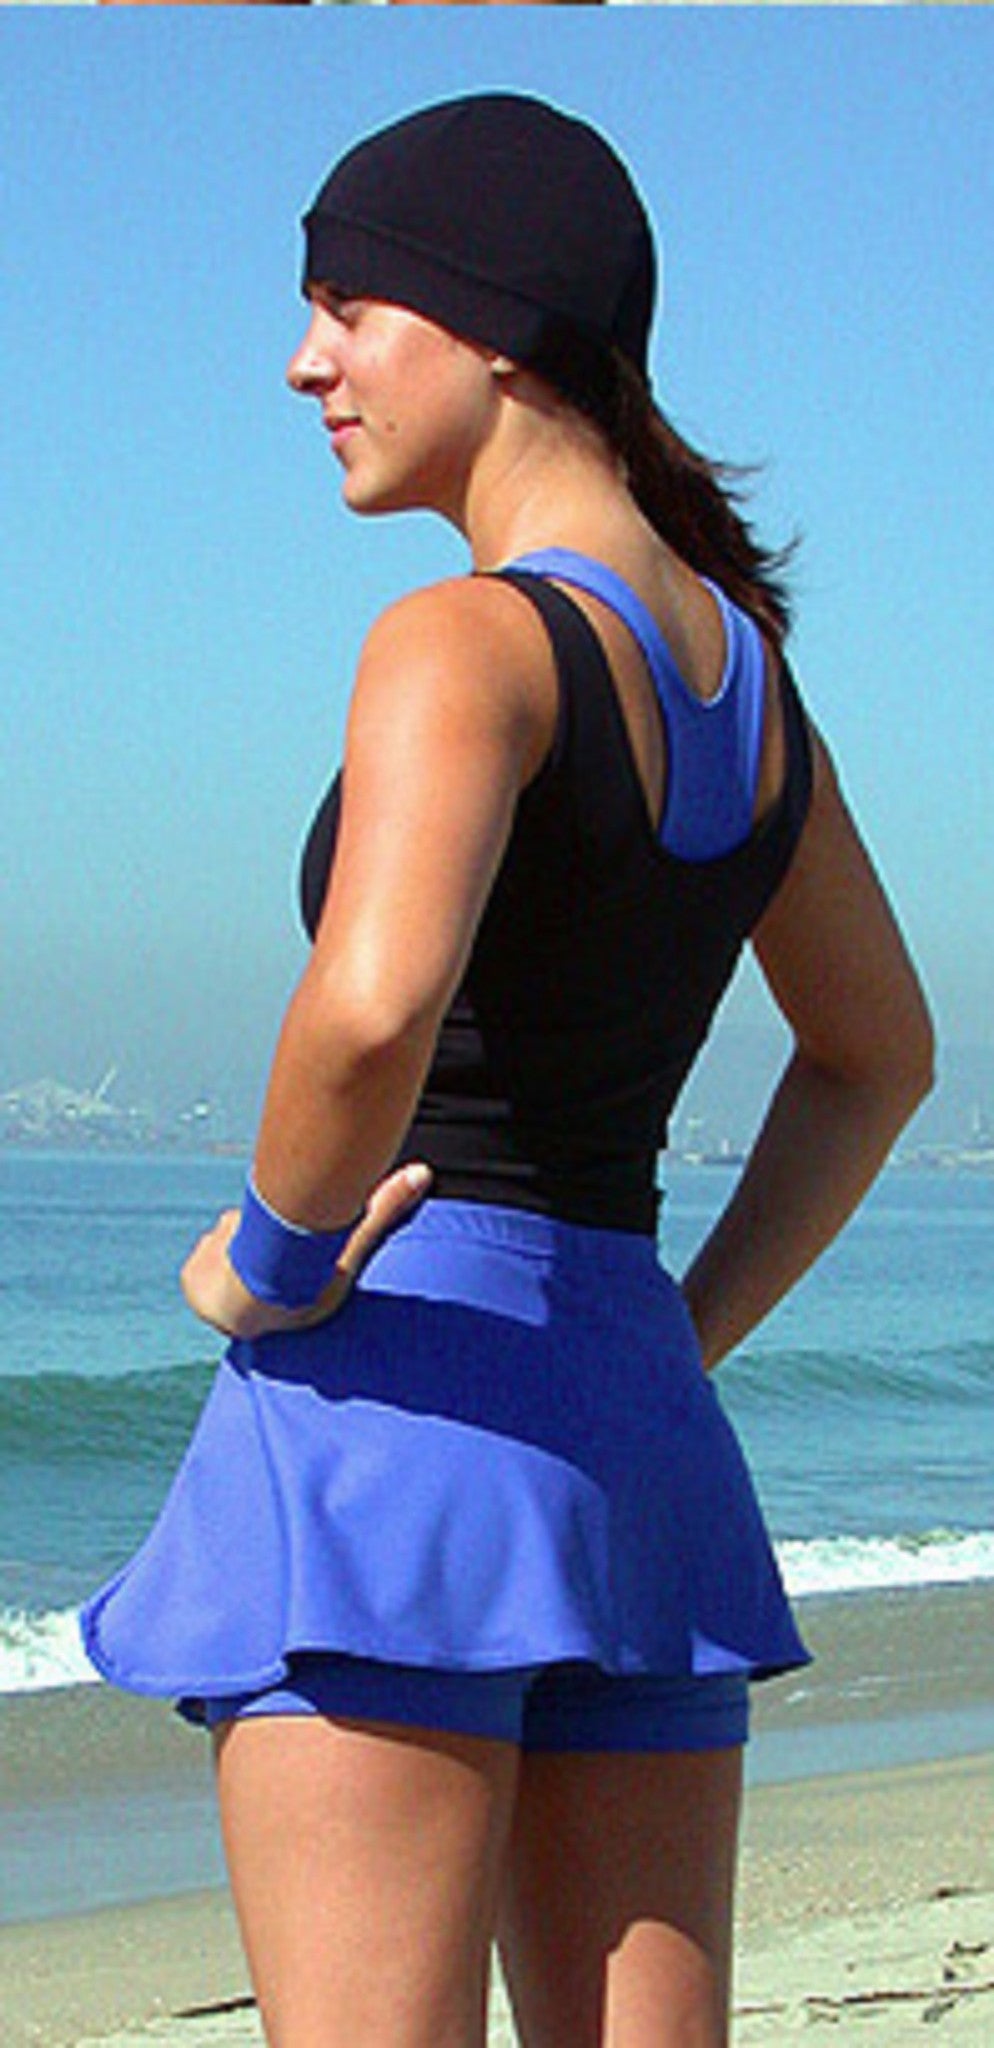 Runner's Gear Women's Skort, Royal Blue, Medium